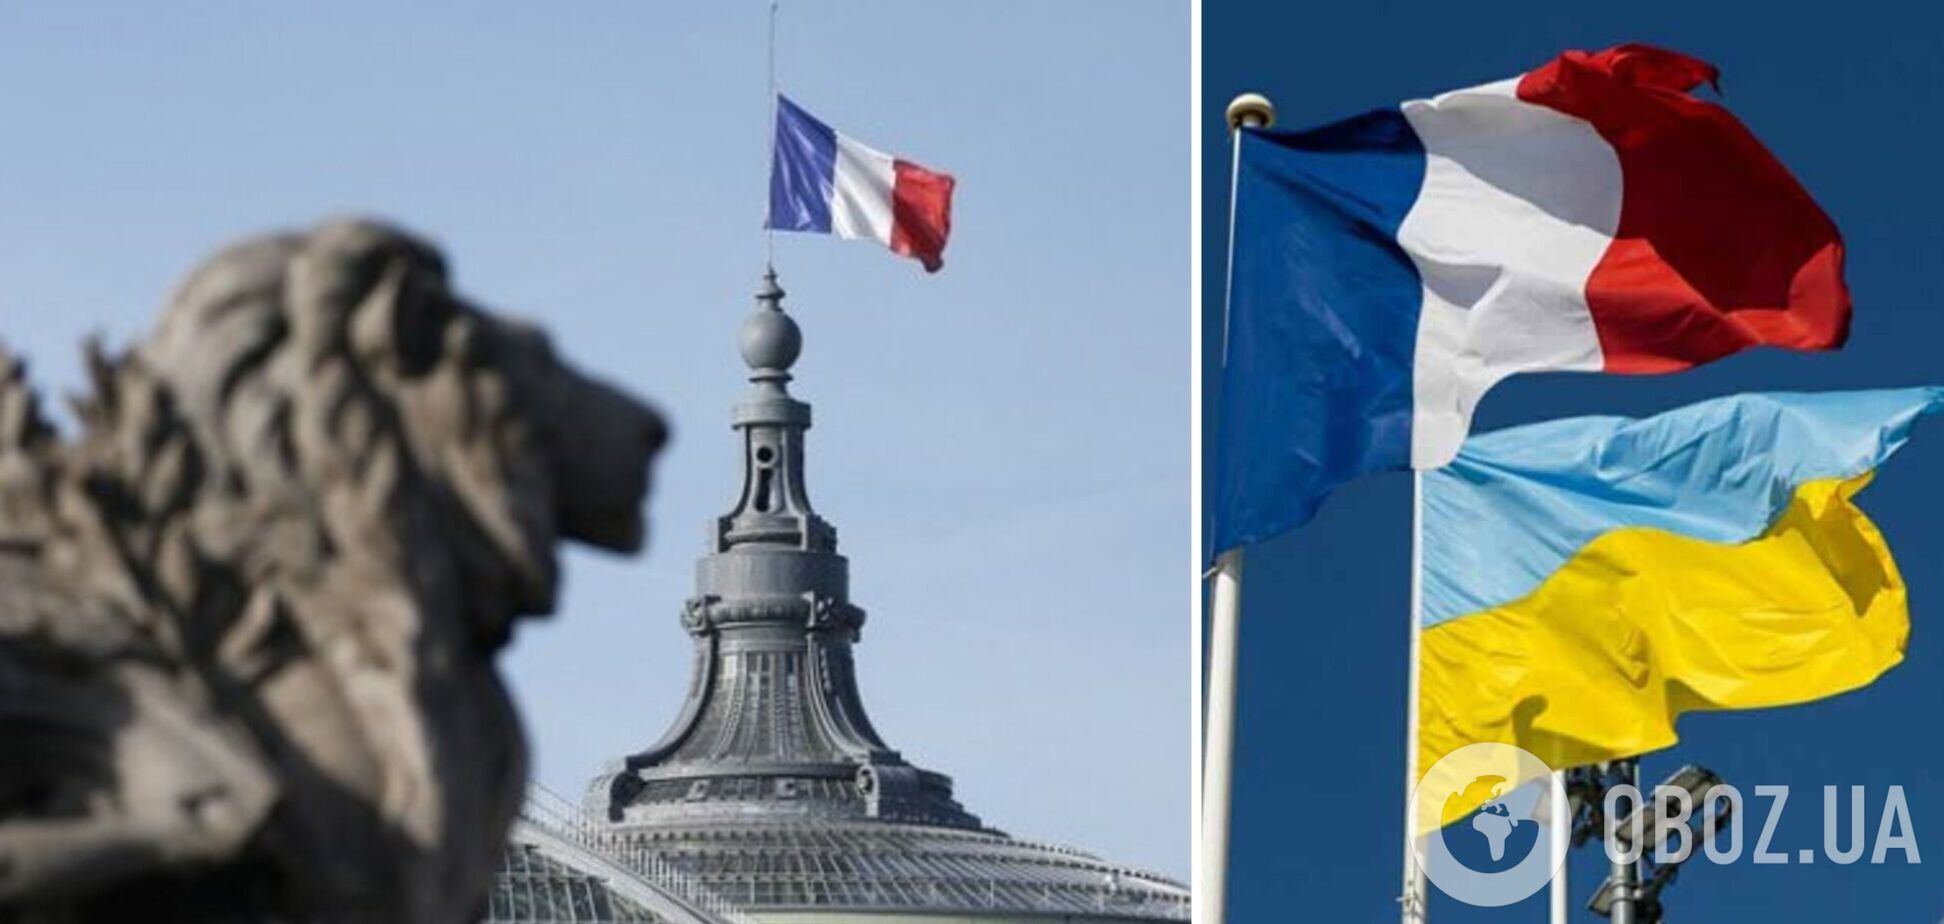 Франция готова стать одним из гарантов безопасности для Украины: в МИДе сделали заявление